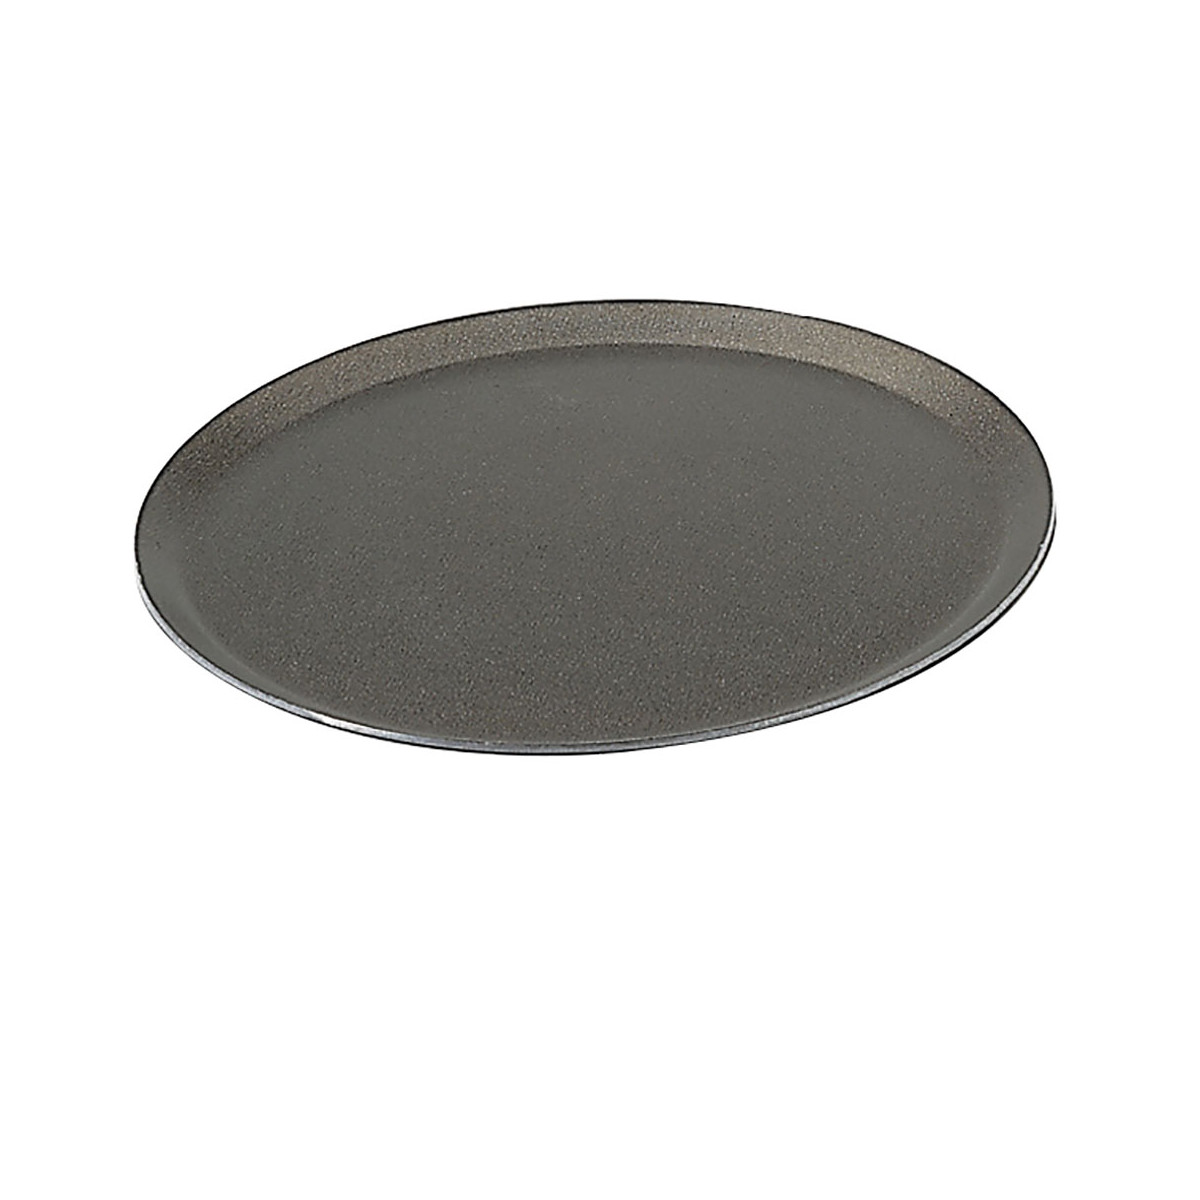 28 cm Diameter De Buyer 8136.28 Choc Non-Stick Aluminium Round Pizza Tray 